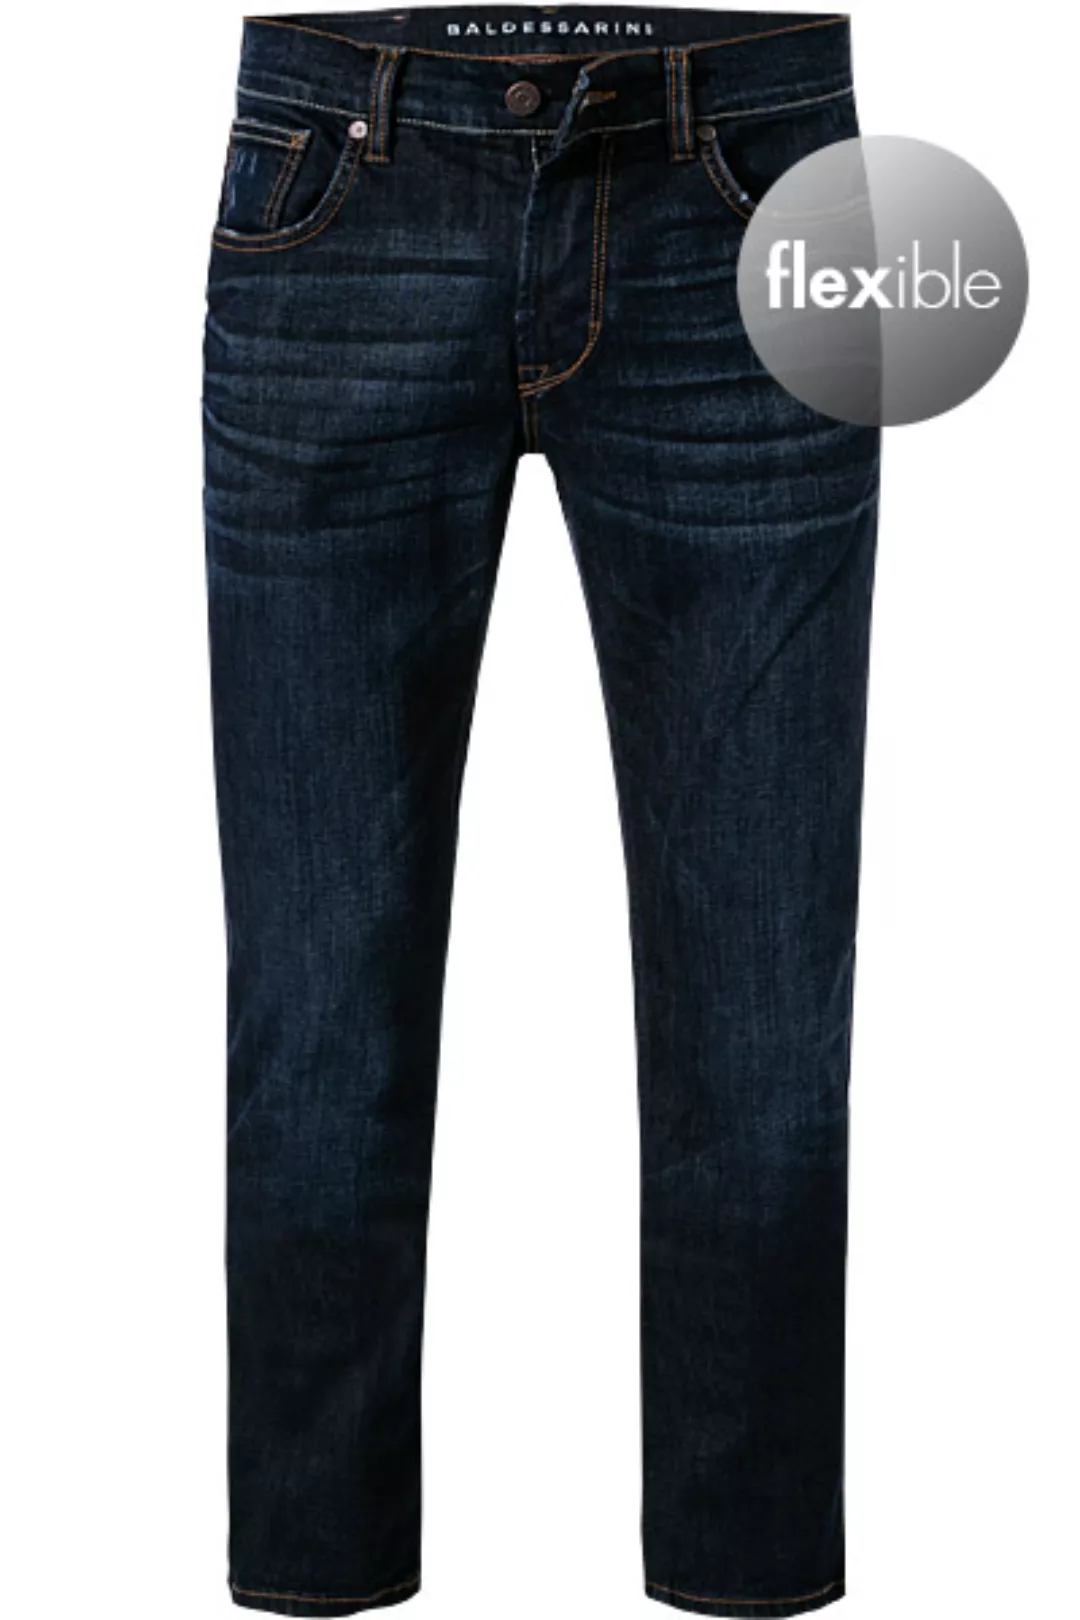 BALDESSARINI Jeans dunkelblau B1 16511.1477/6817 günstig online kaufen